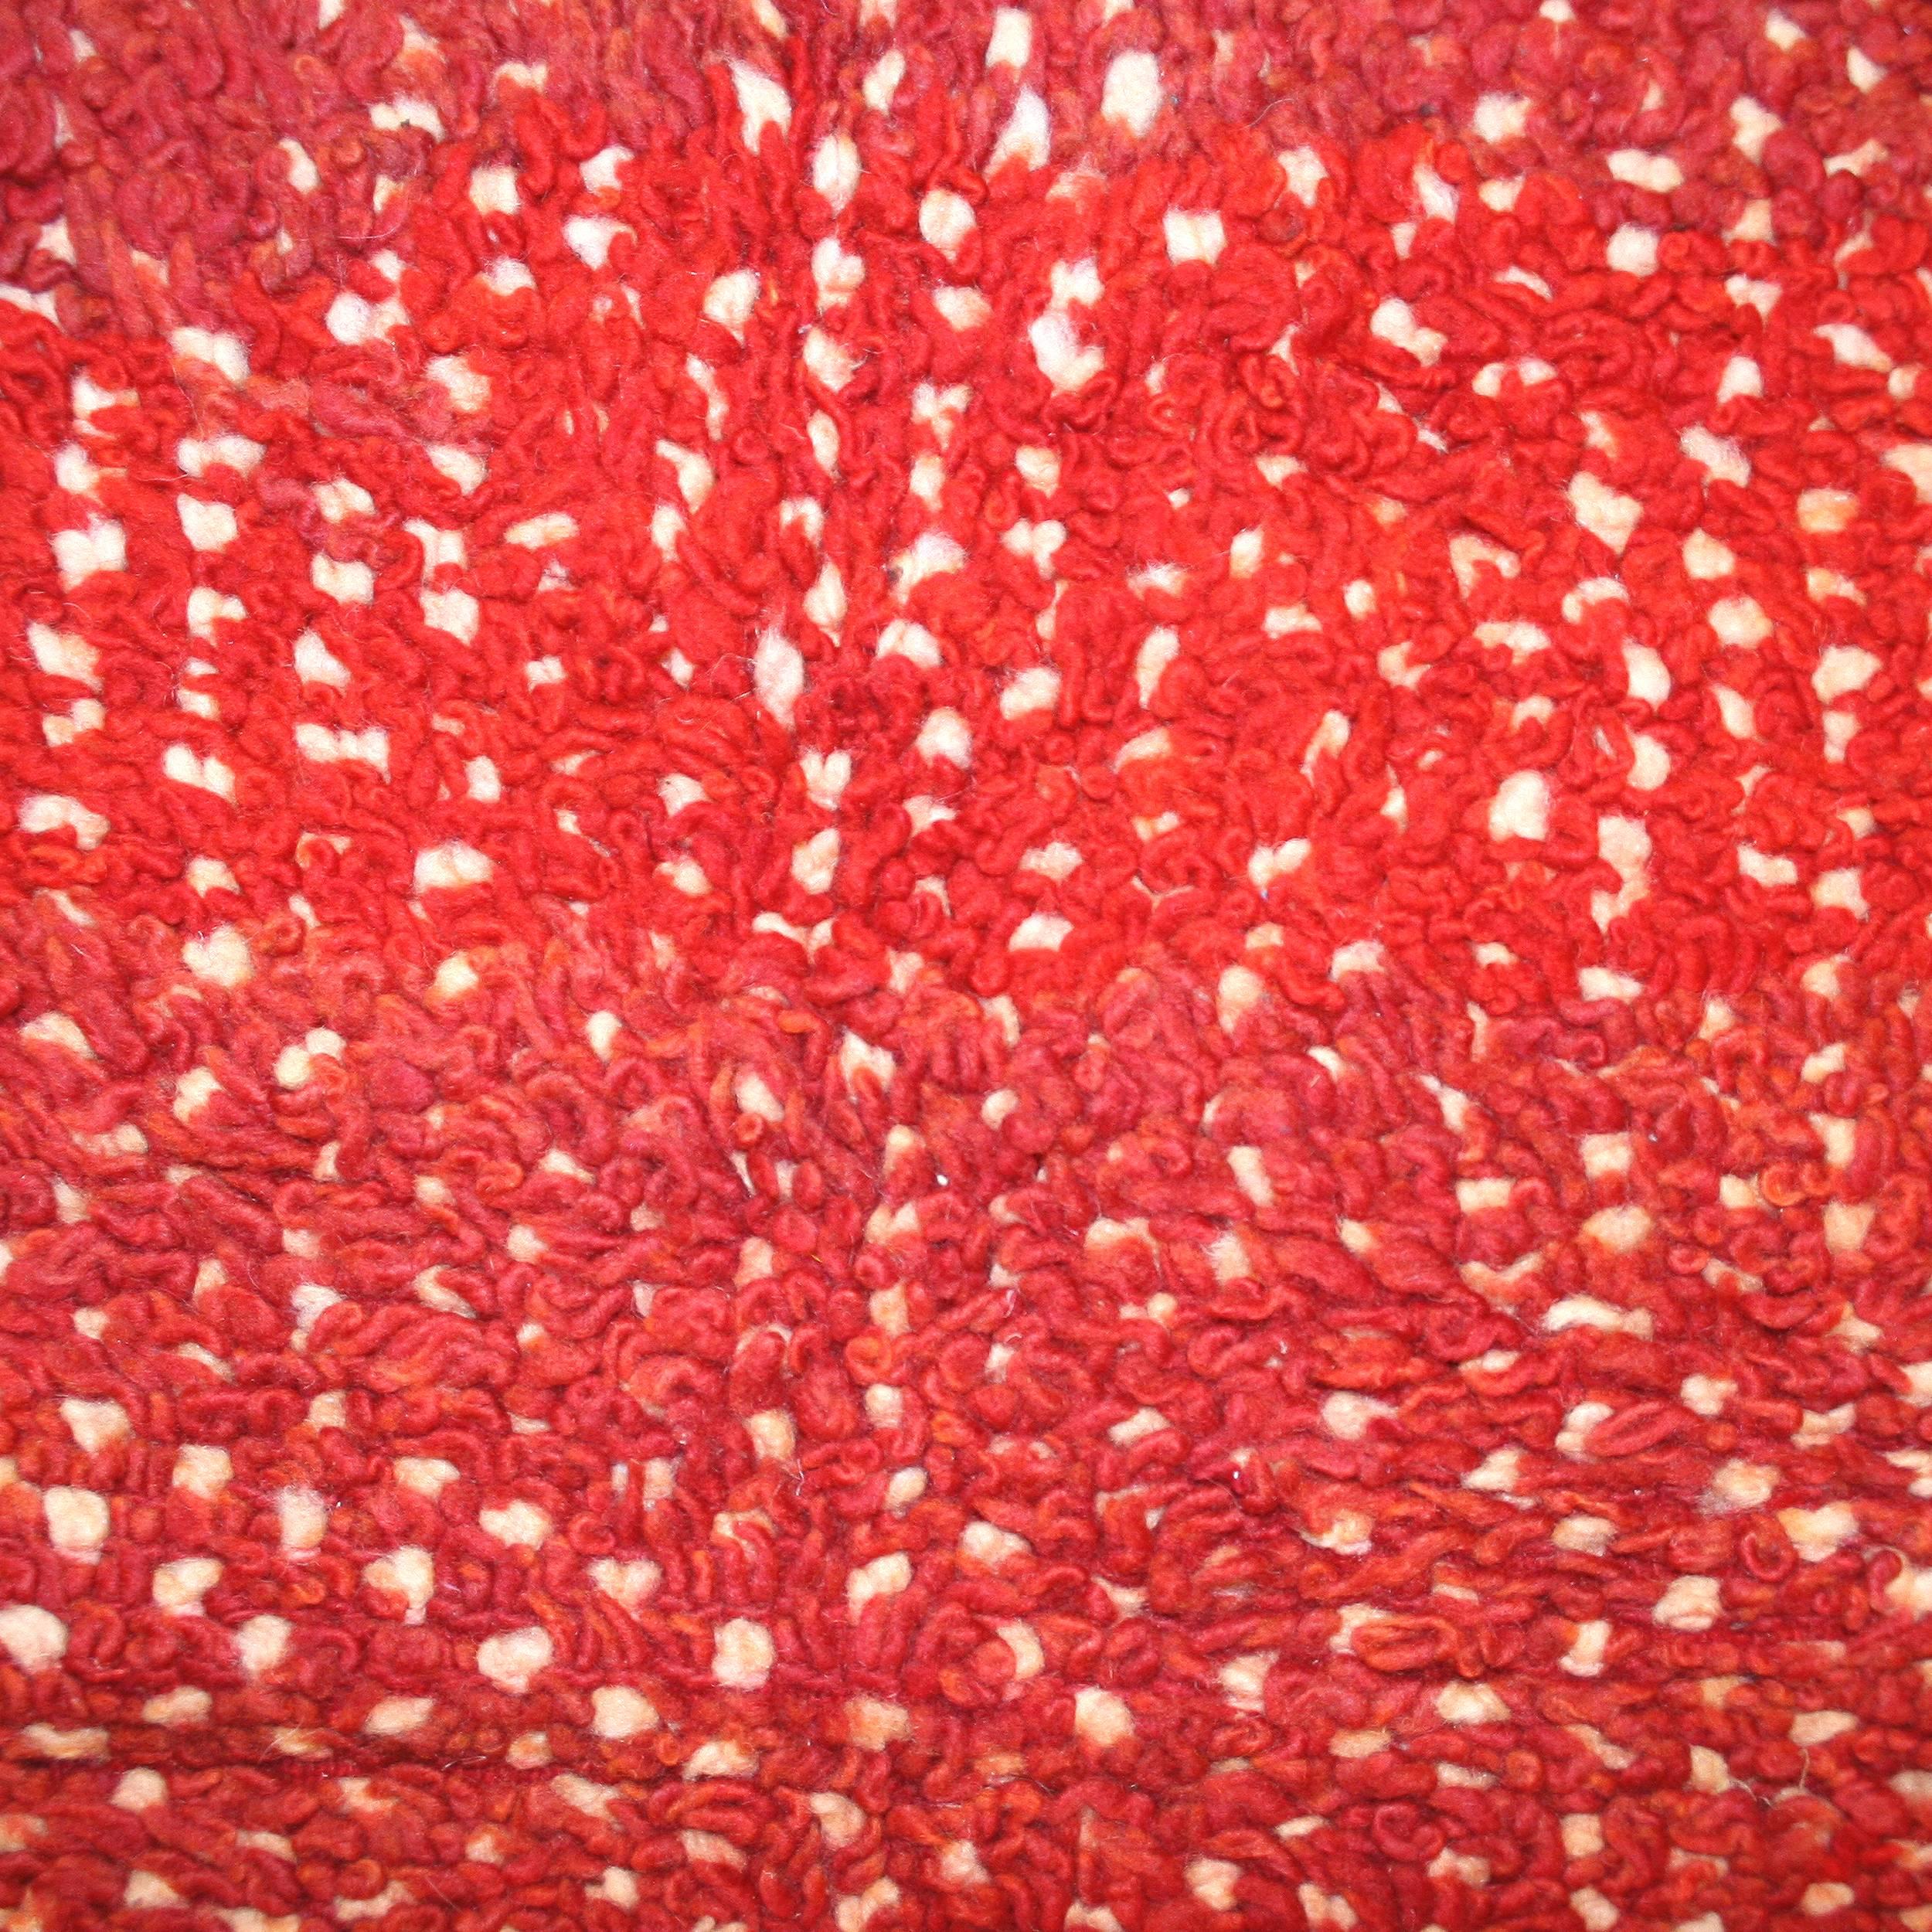 Ein sehr ungewöhnlicher Berberteppich, der sich durch einen roten Hintergrund auszeichnet, der teilweise ein pointillistisches Muster in Elfenbein verdeckt. Das Ergebnis ist ein Teppich mit einer einzigartigen Textur, die an bestimmte skandinavische